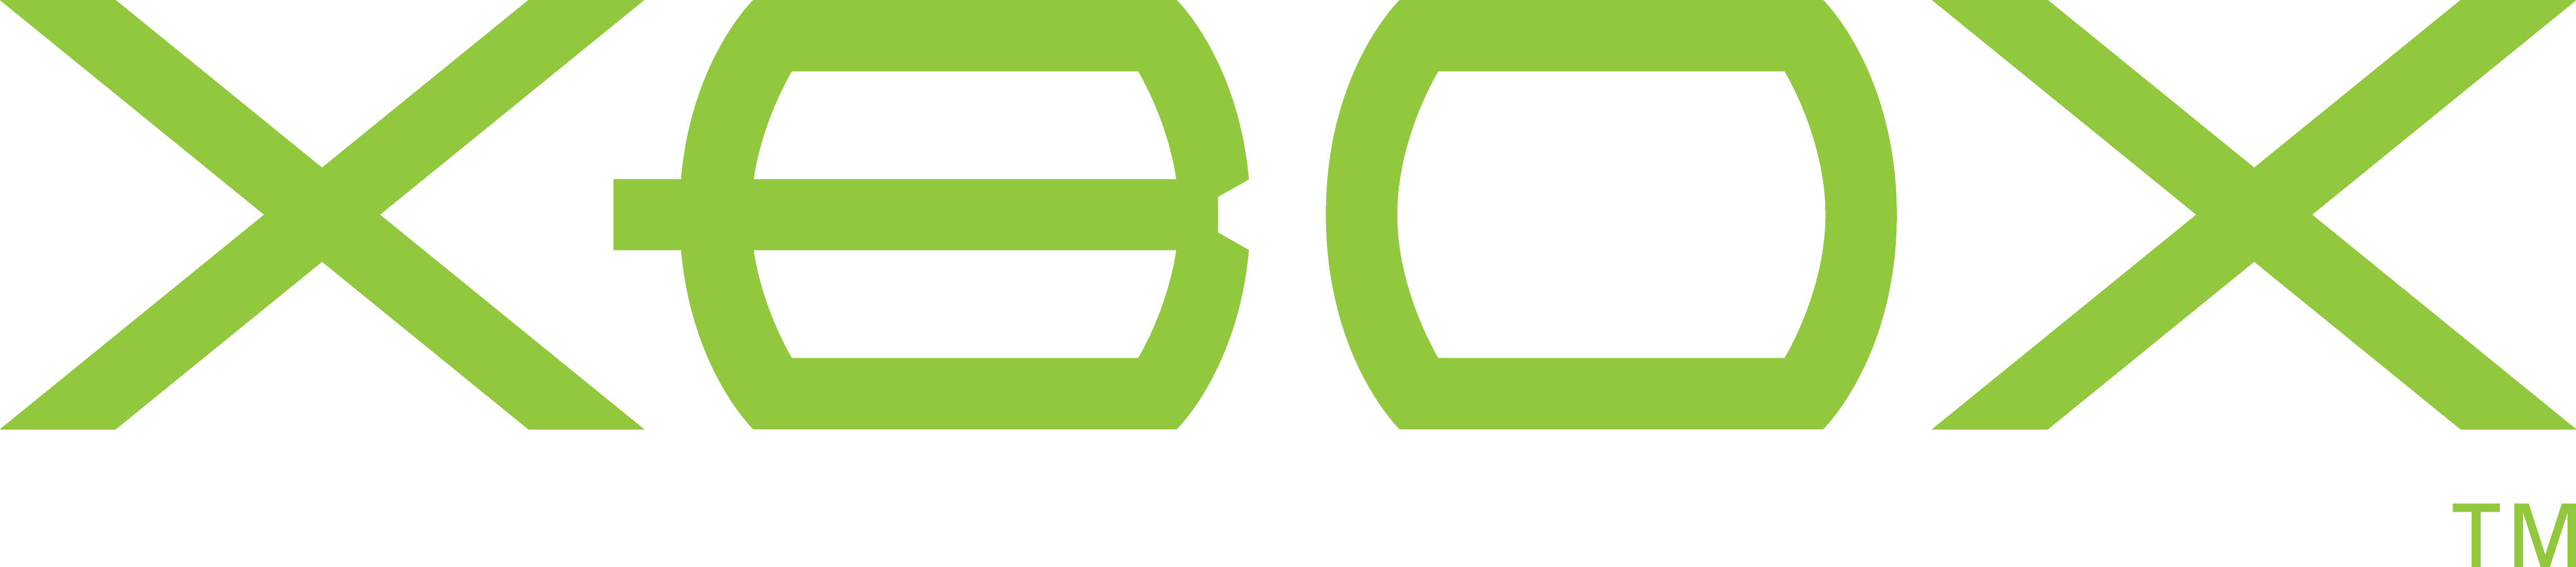 First Xbox Logo - Original xbox Logos